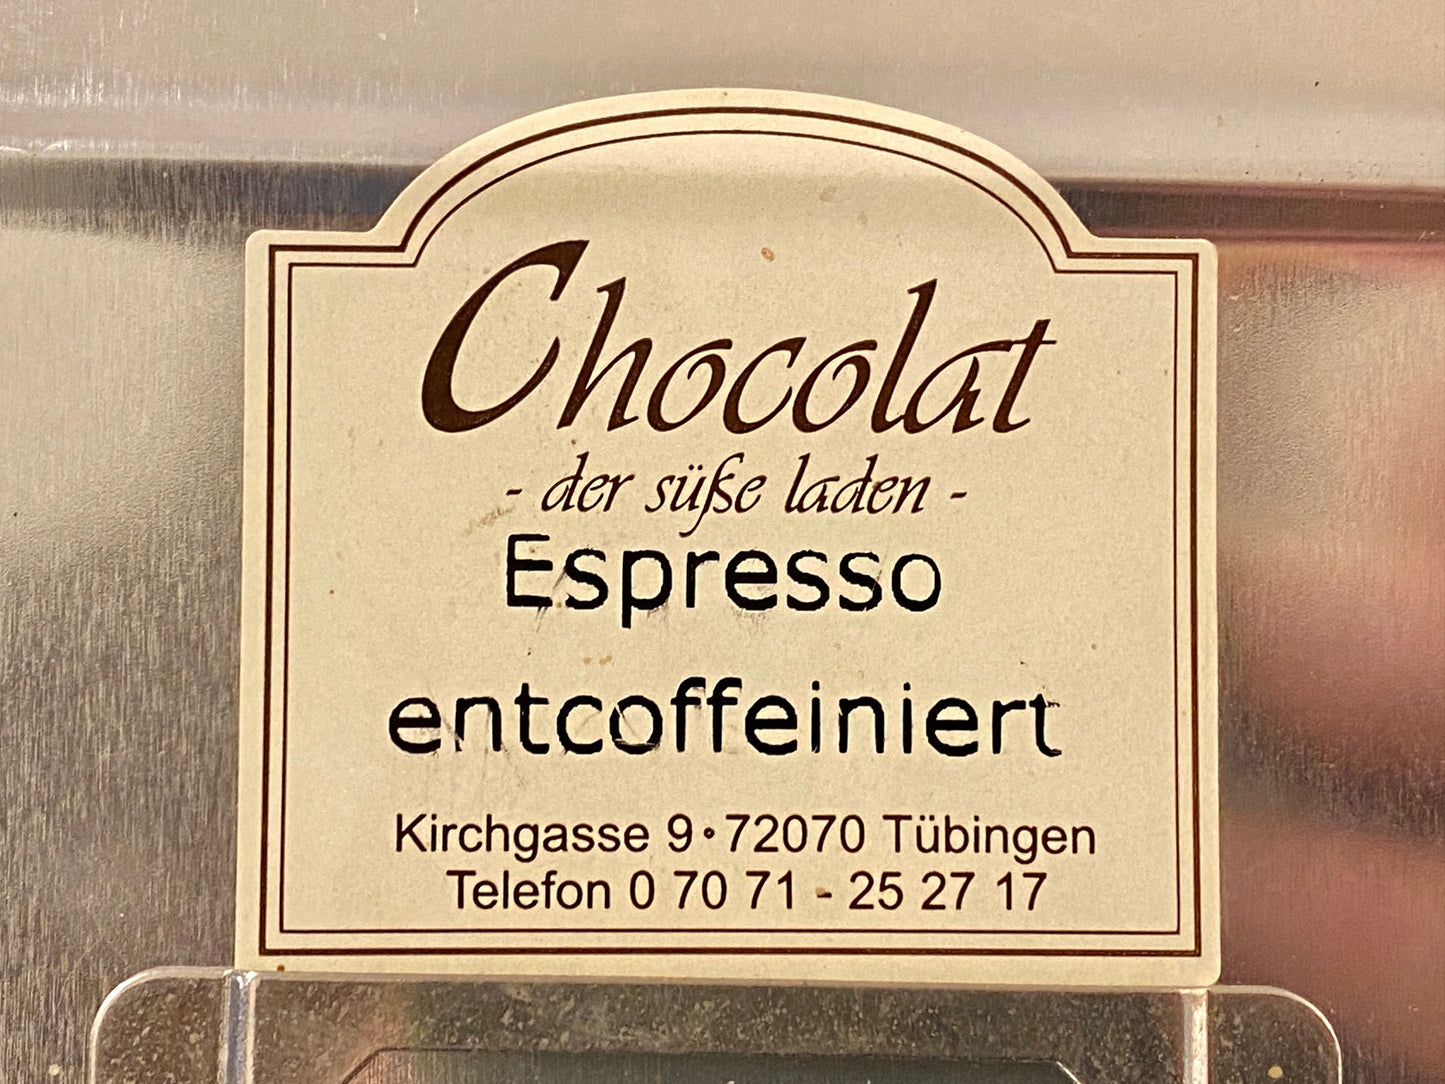 Hausmischung Espresso entkoffeiniert